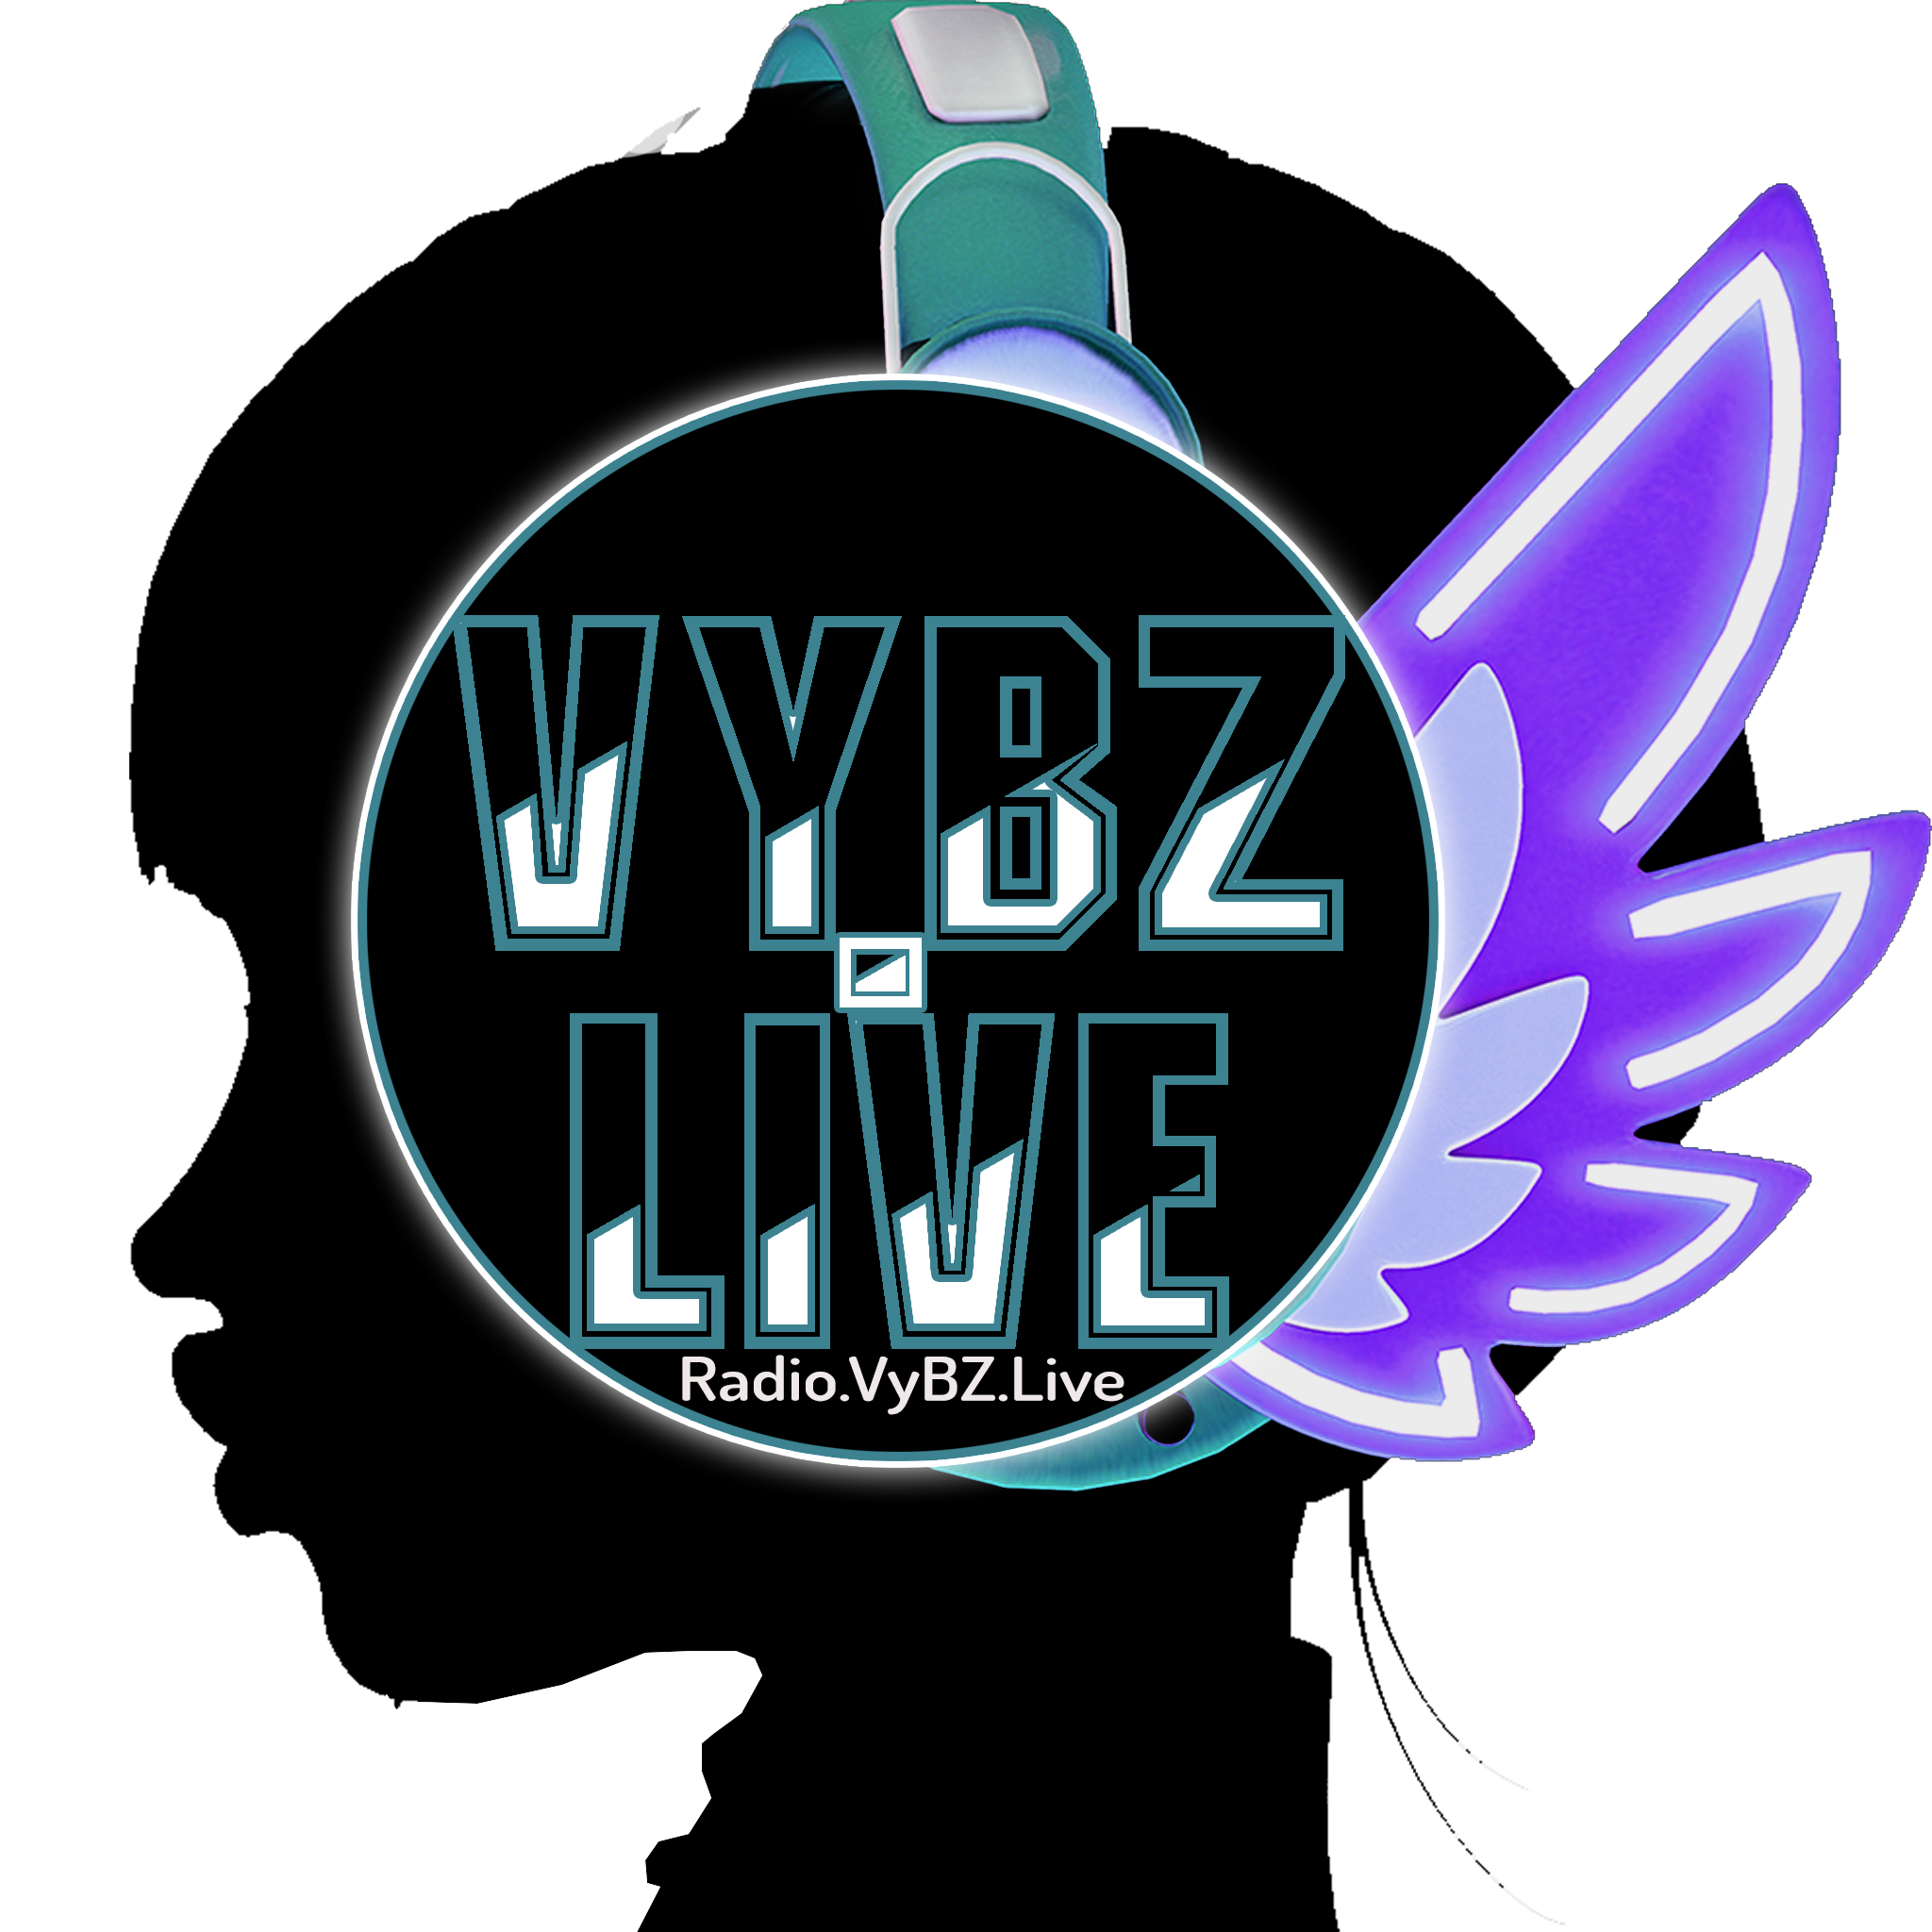 Radio.VyBZ.Live